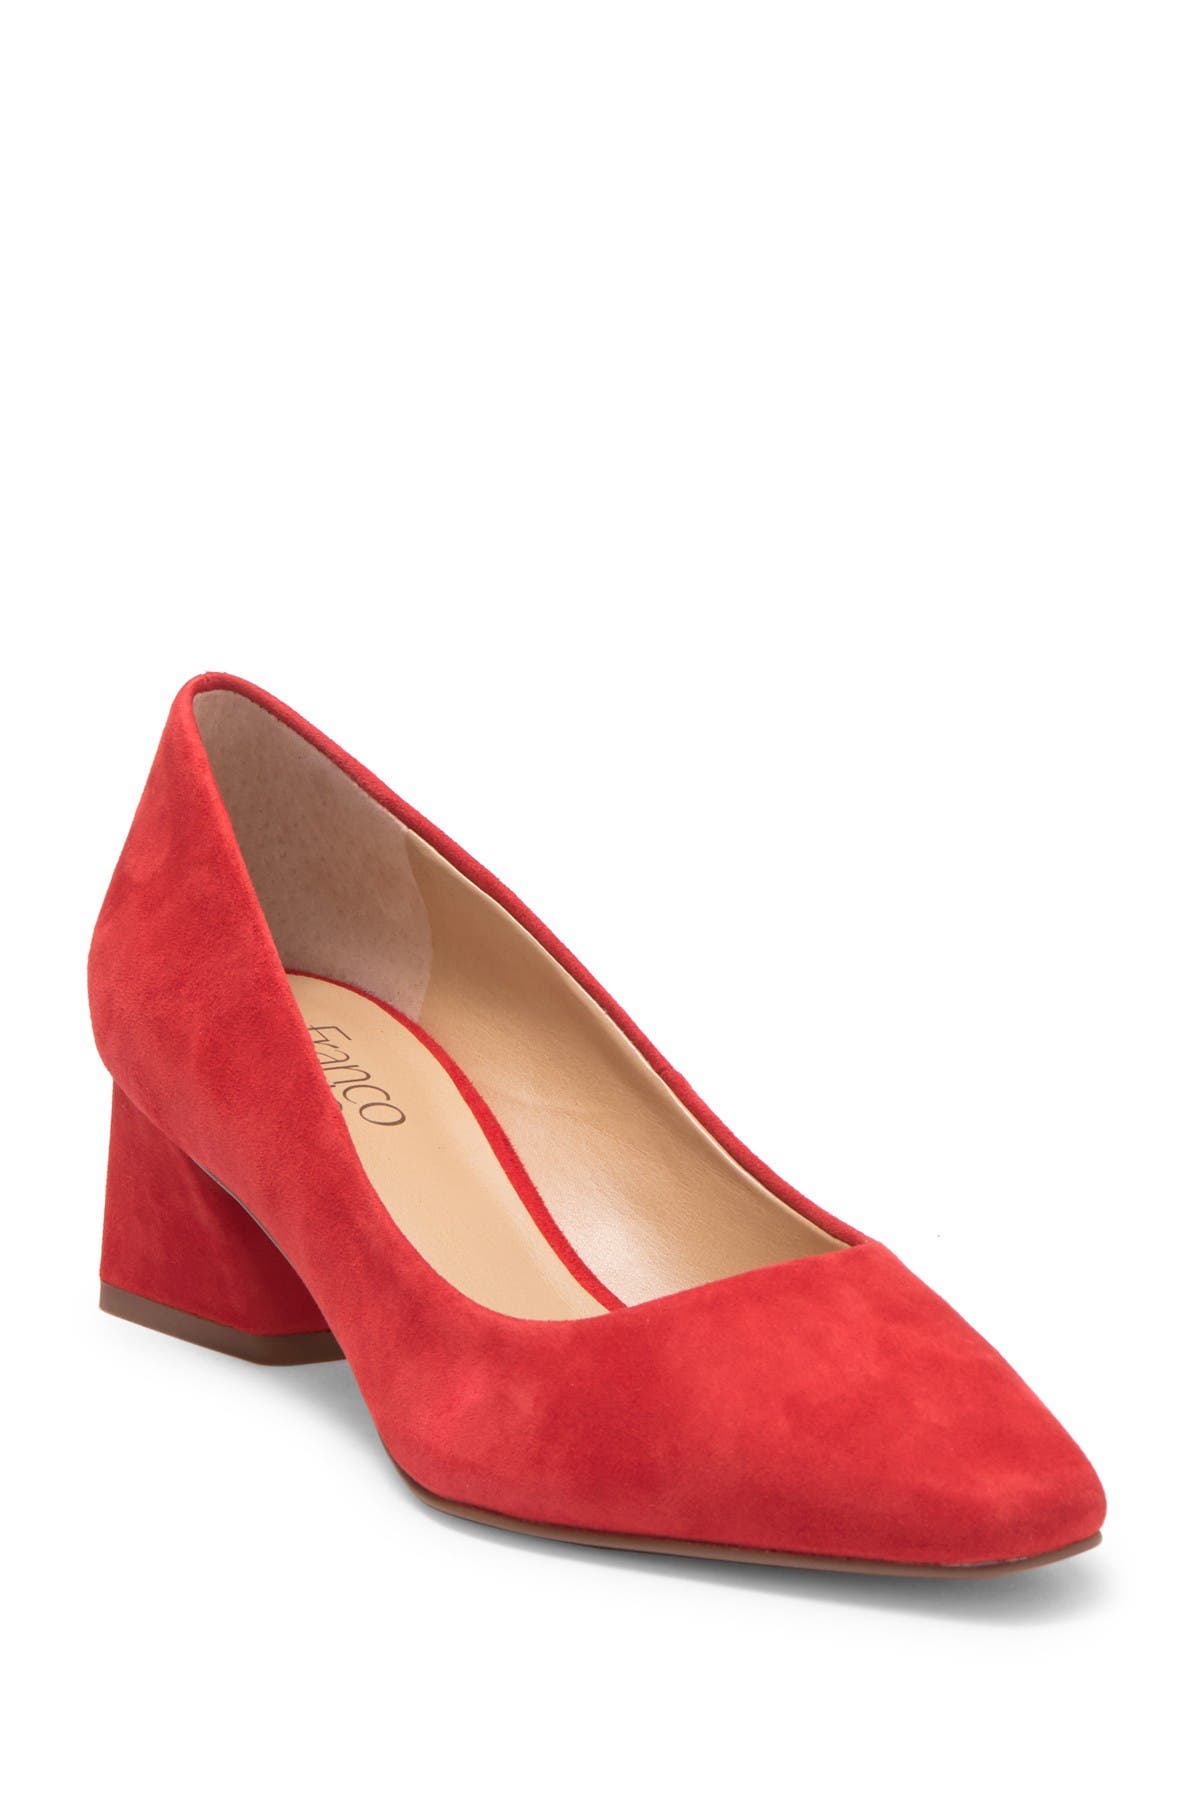 franco sarto red heels